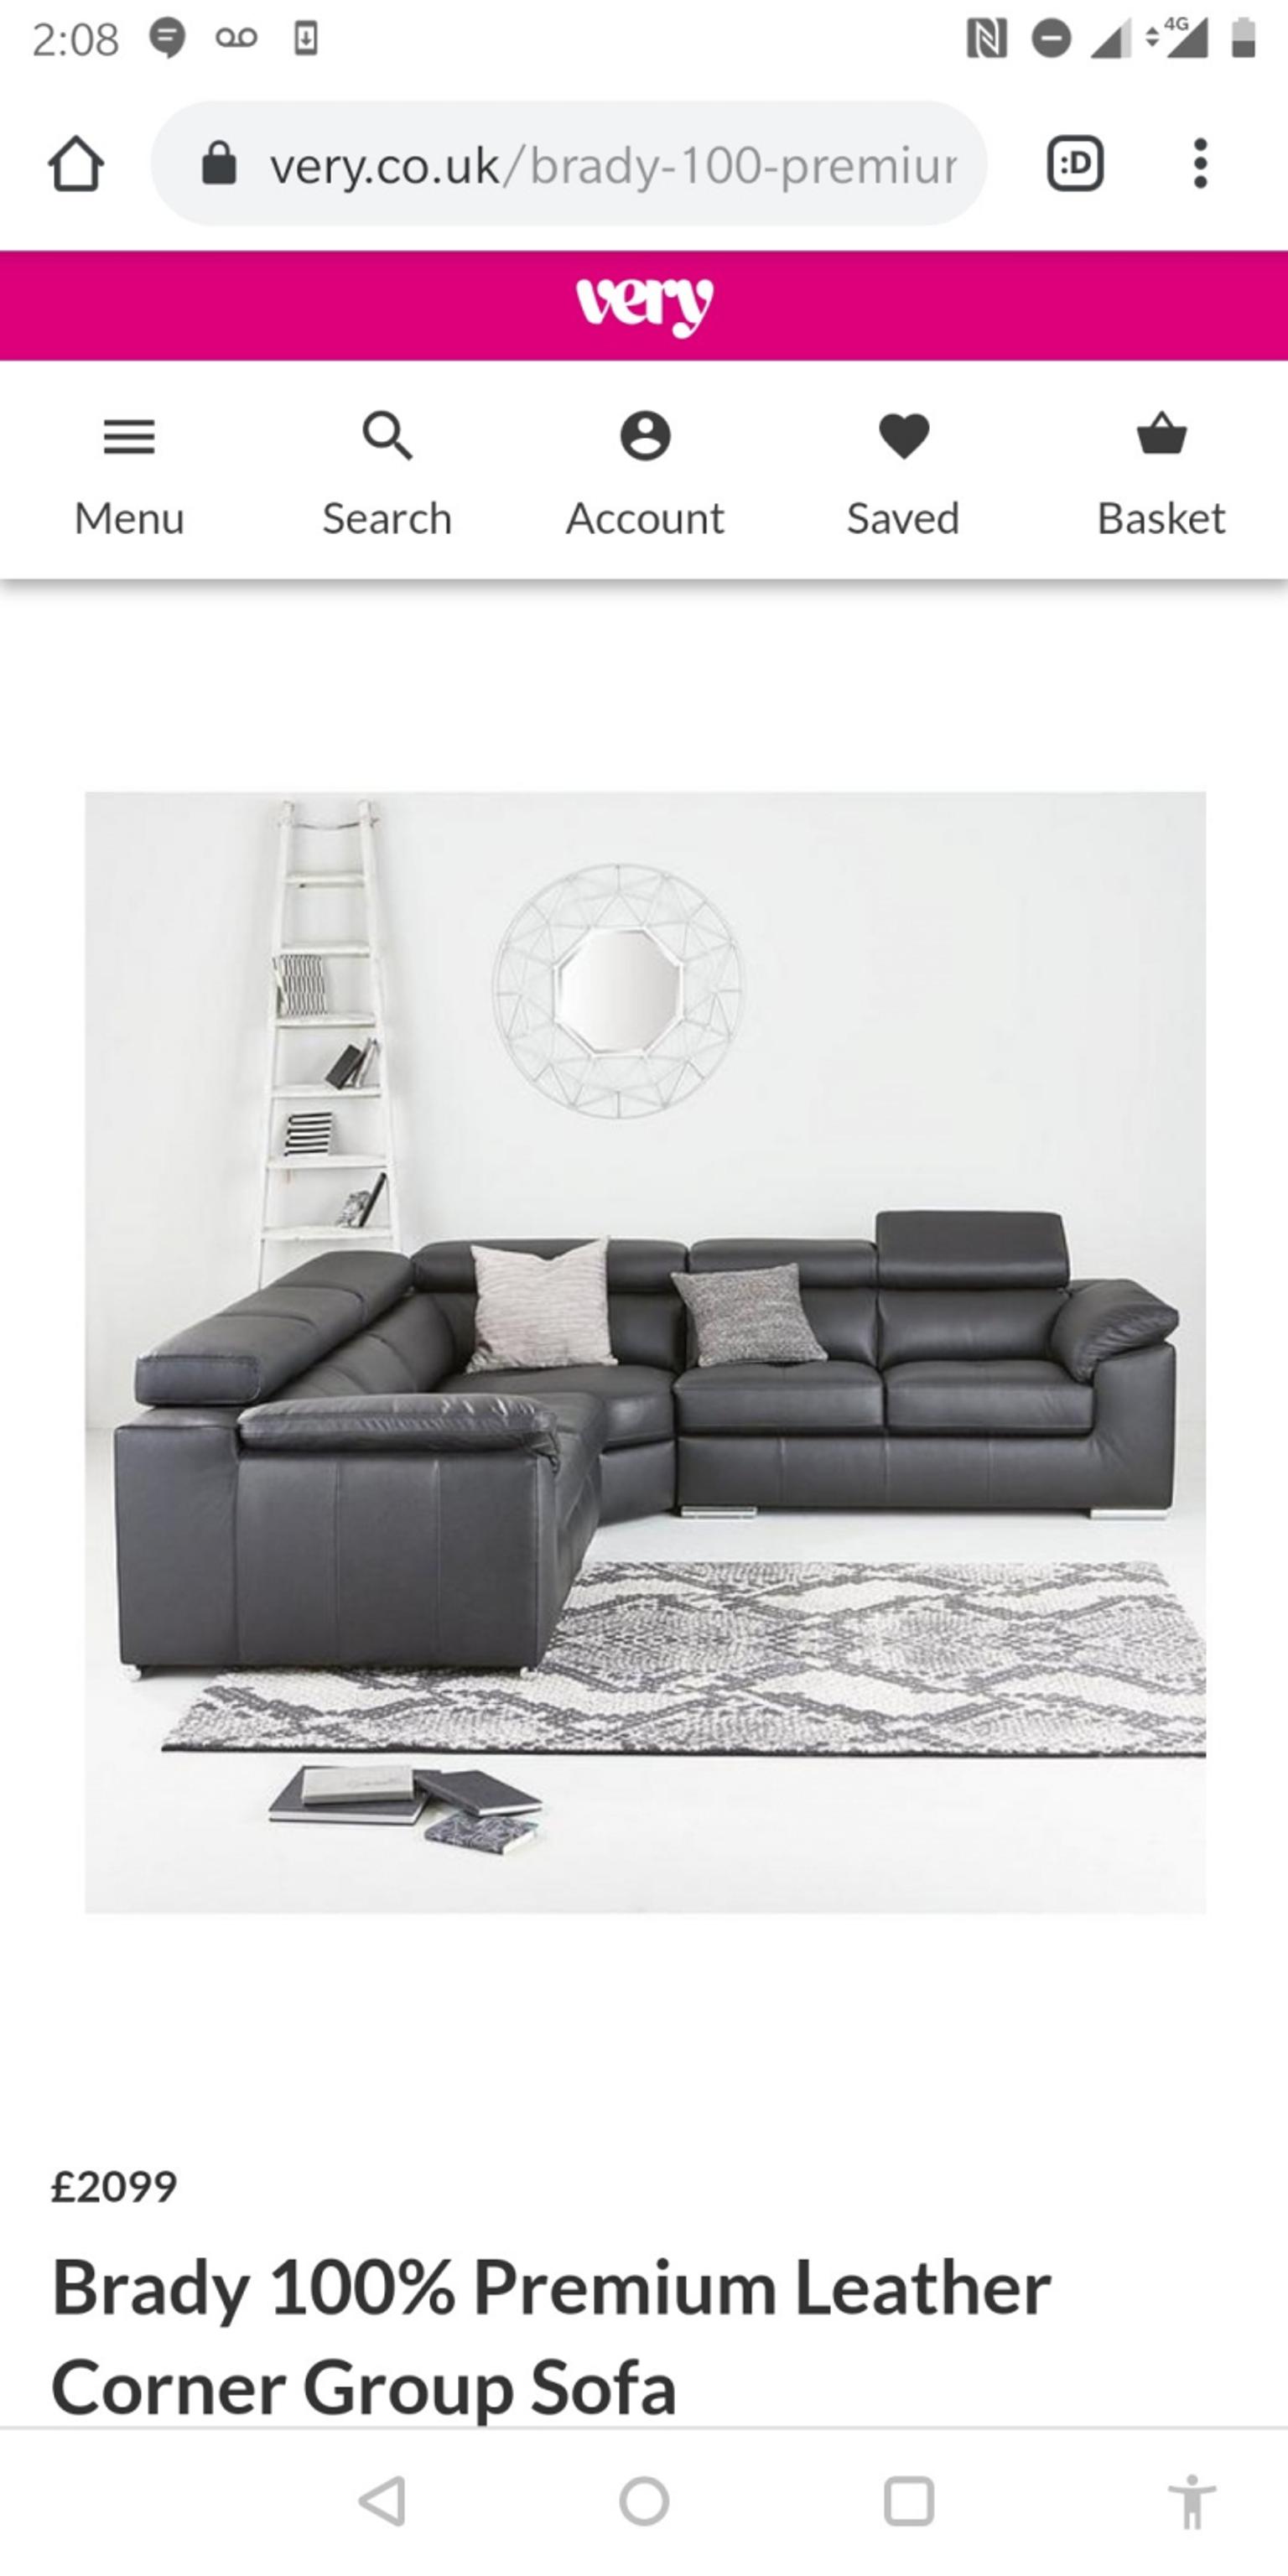 Brady 100 Premium Leather Corner Group, Brady 100 Premium Leather Corner Group Sofa